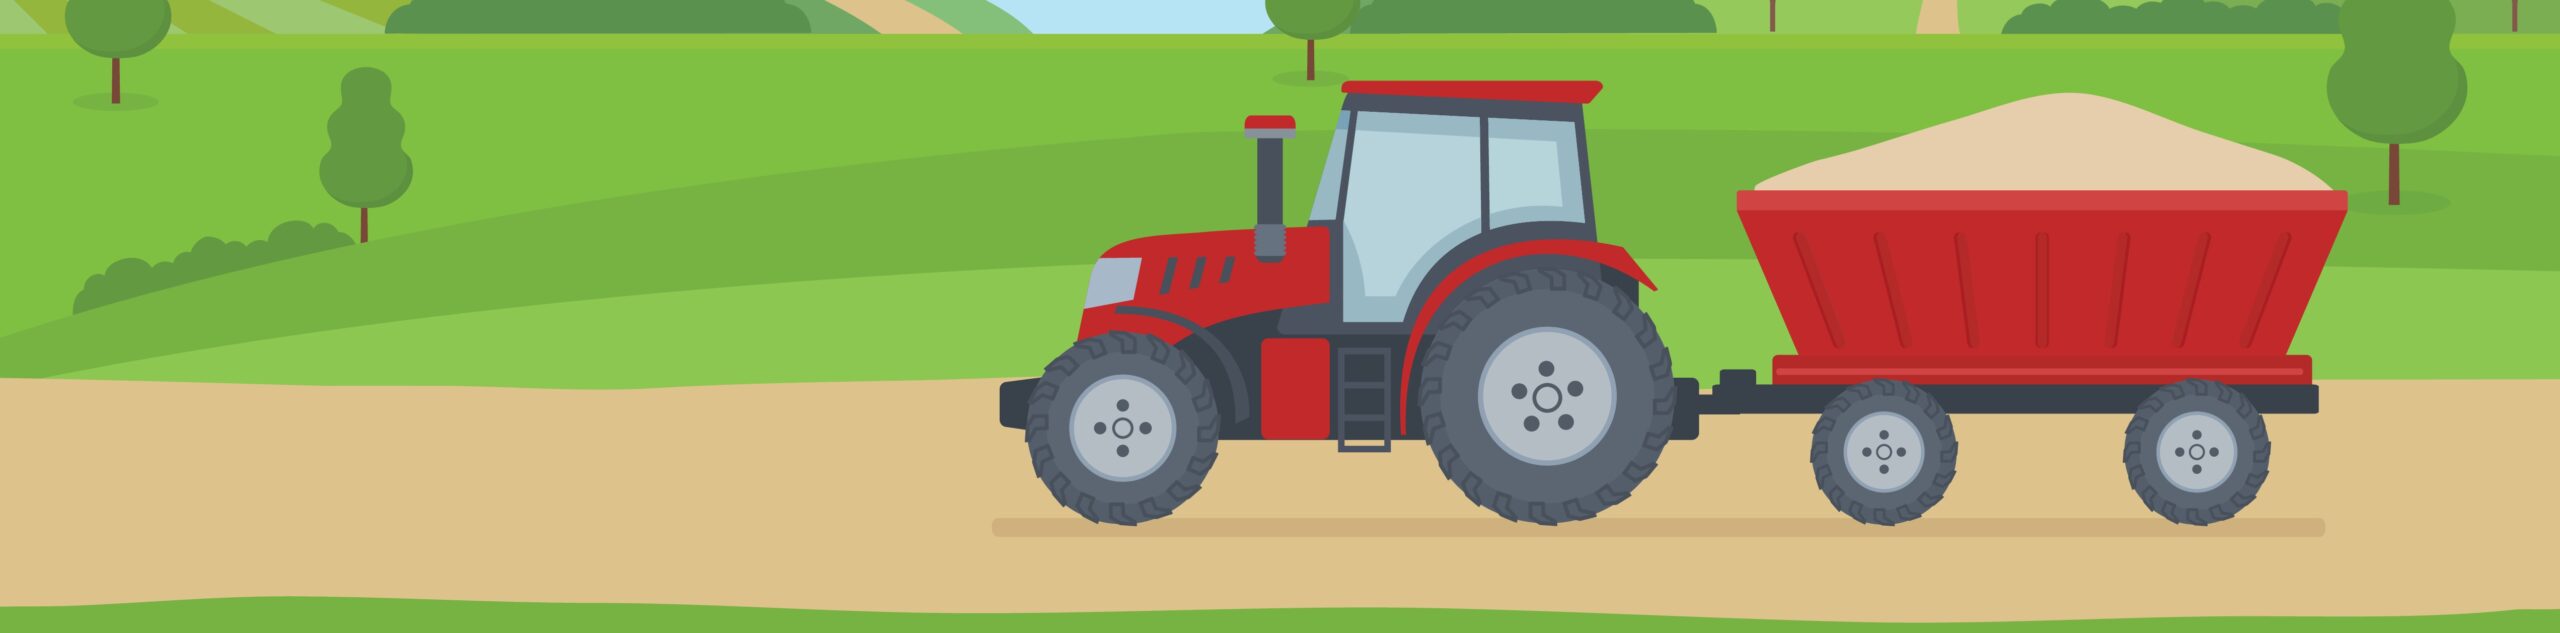 Kolorowanki Traktory Do Drukowania